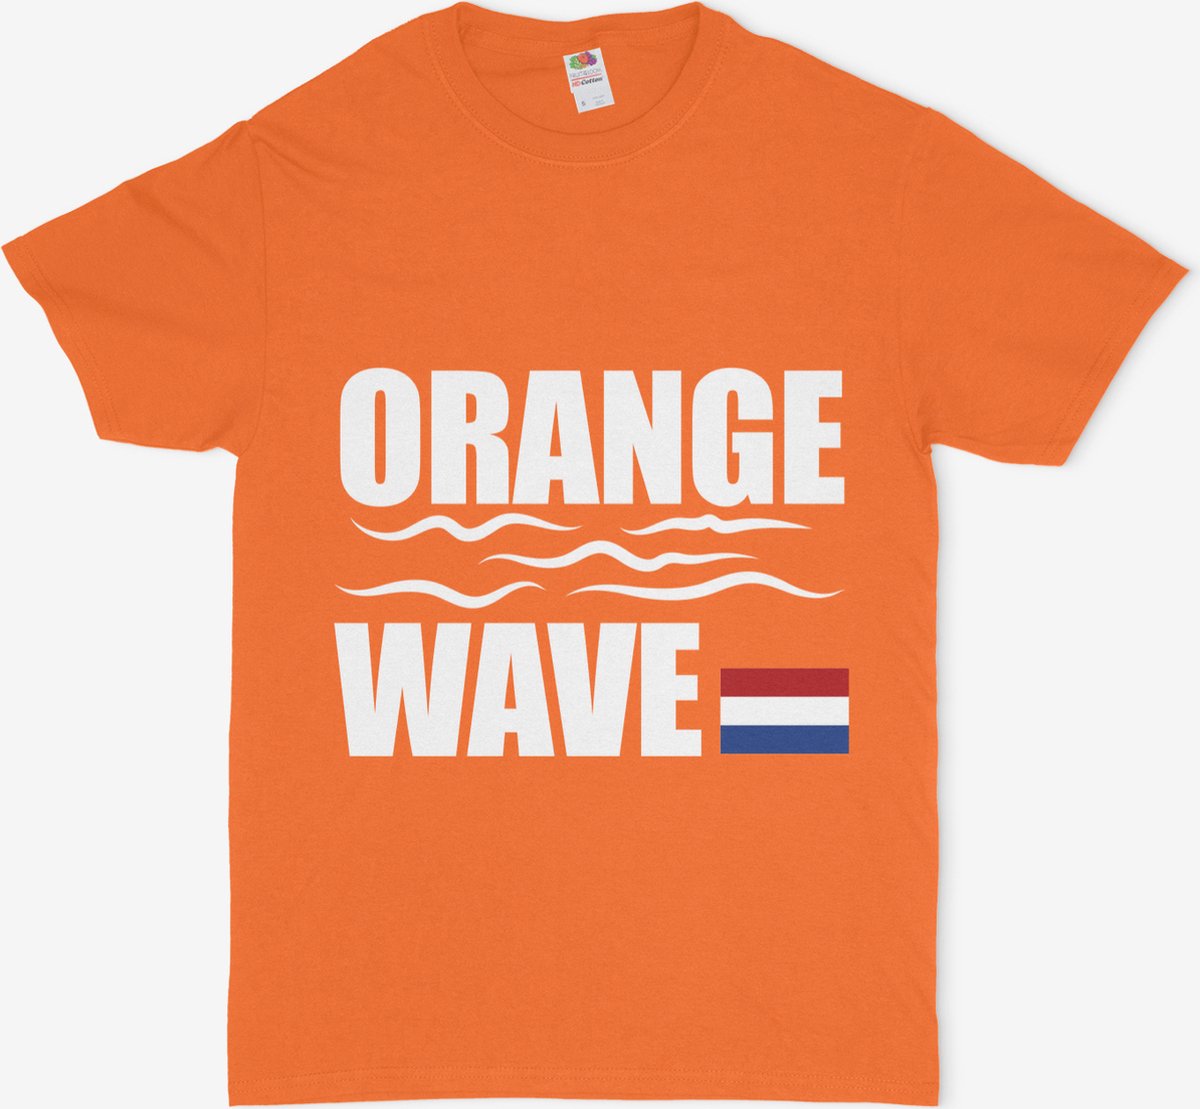 Fruit of the Loom SC230-Tshirt-Oranje-Formule 1-Orange Day-Voetbal-Zandvoort-Max Verstappen-Koningsdag